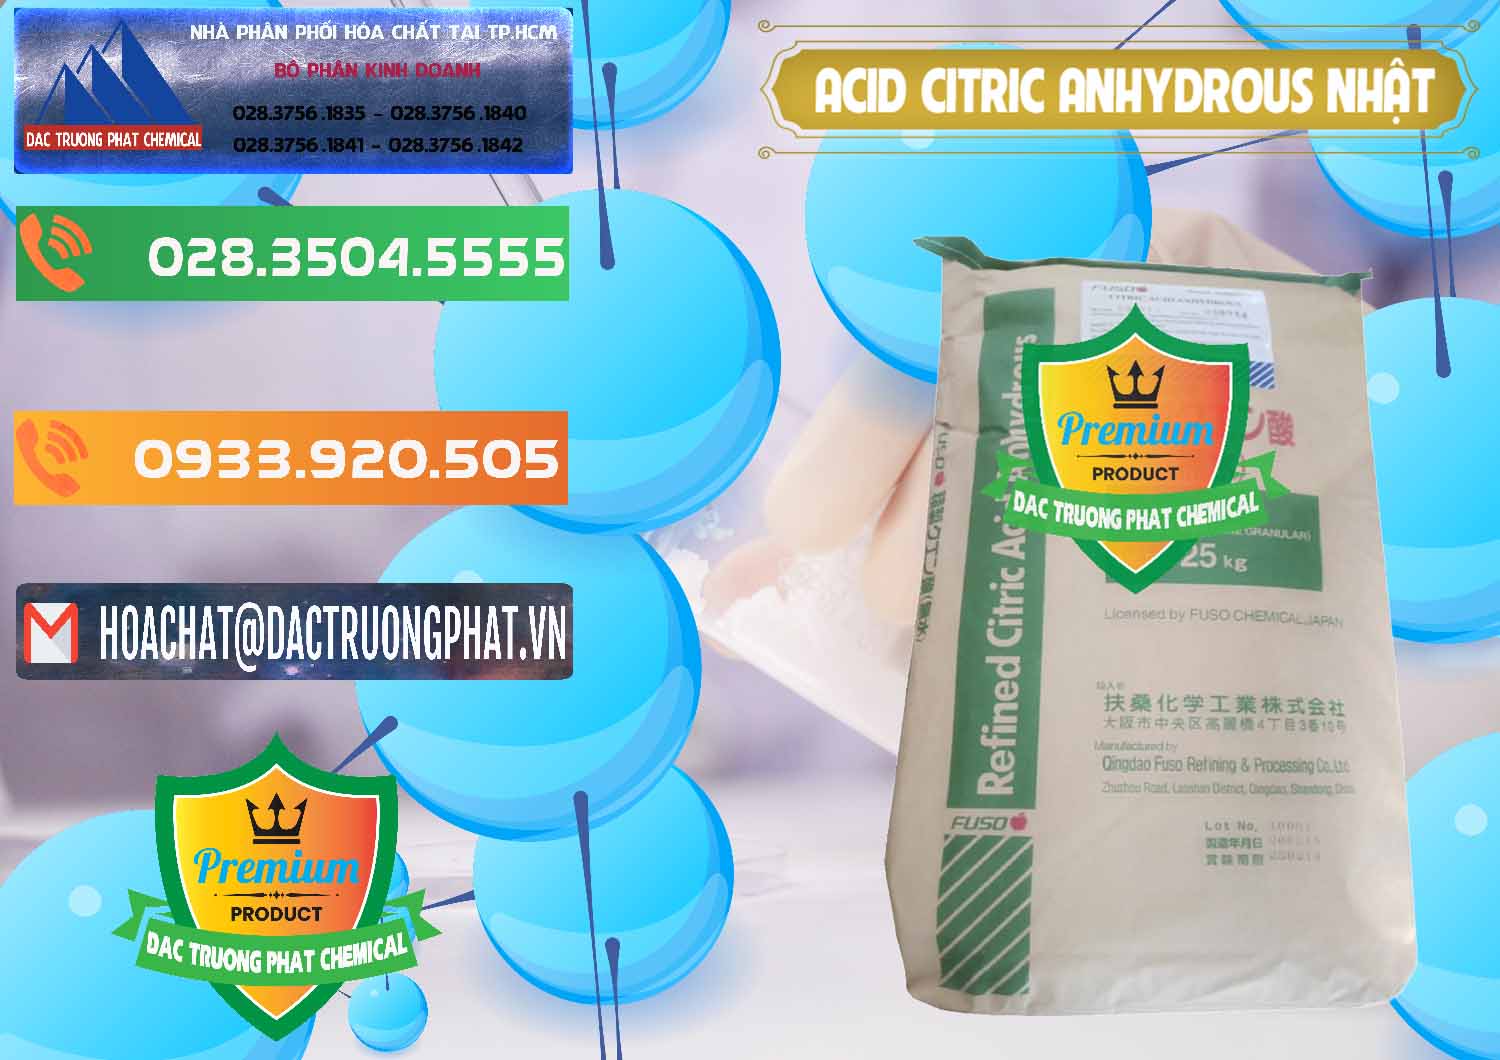 Kinh doanh _ bán Acid Citric - Axit Citric Anhydrous FUSO Nhật Japan - 0439 - Cty chuyên phân phối & cung ứng hóa chất tại TP.HCM - hoachatxulynuoc.com.vn